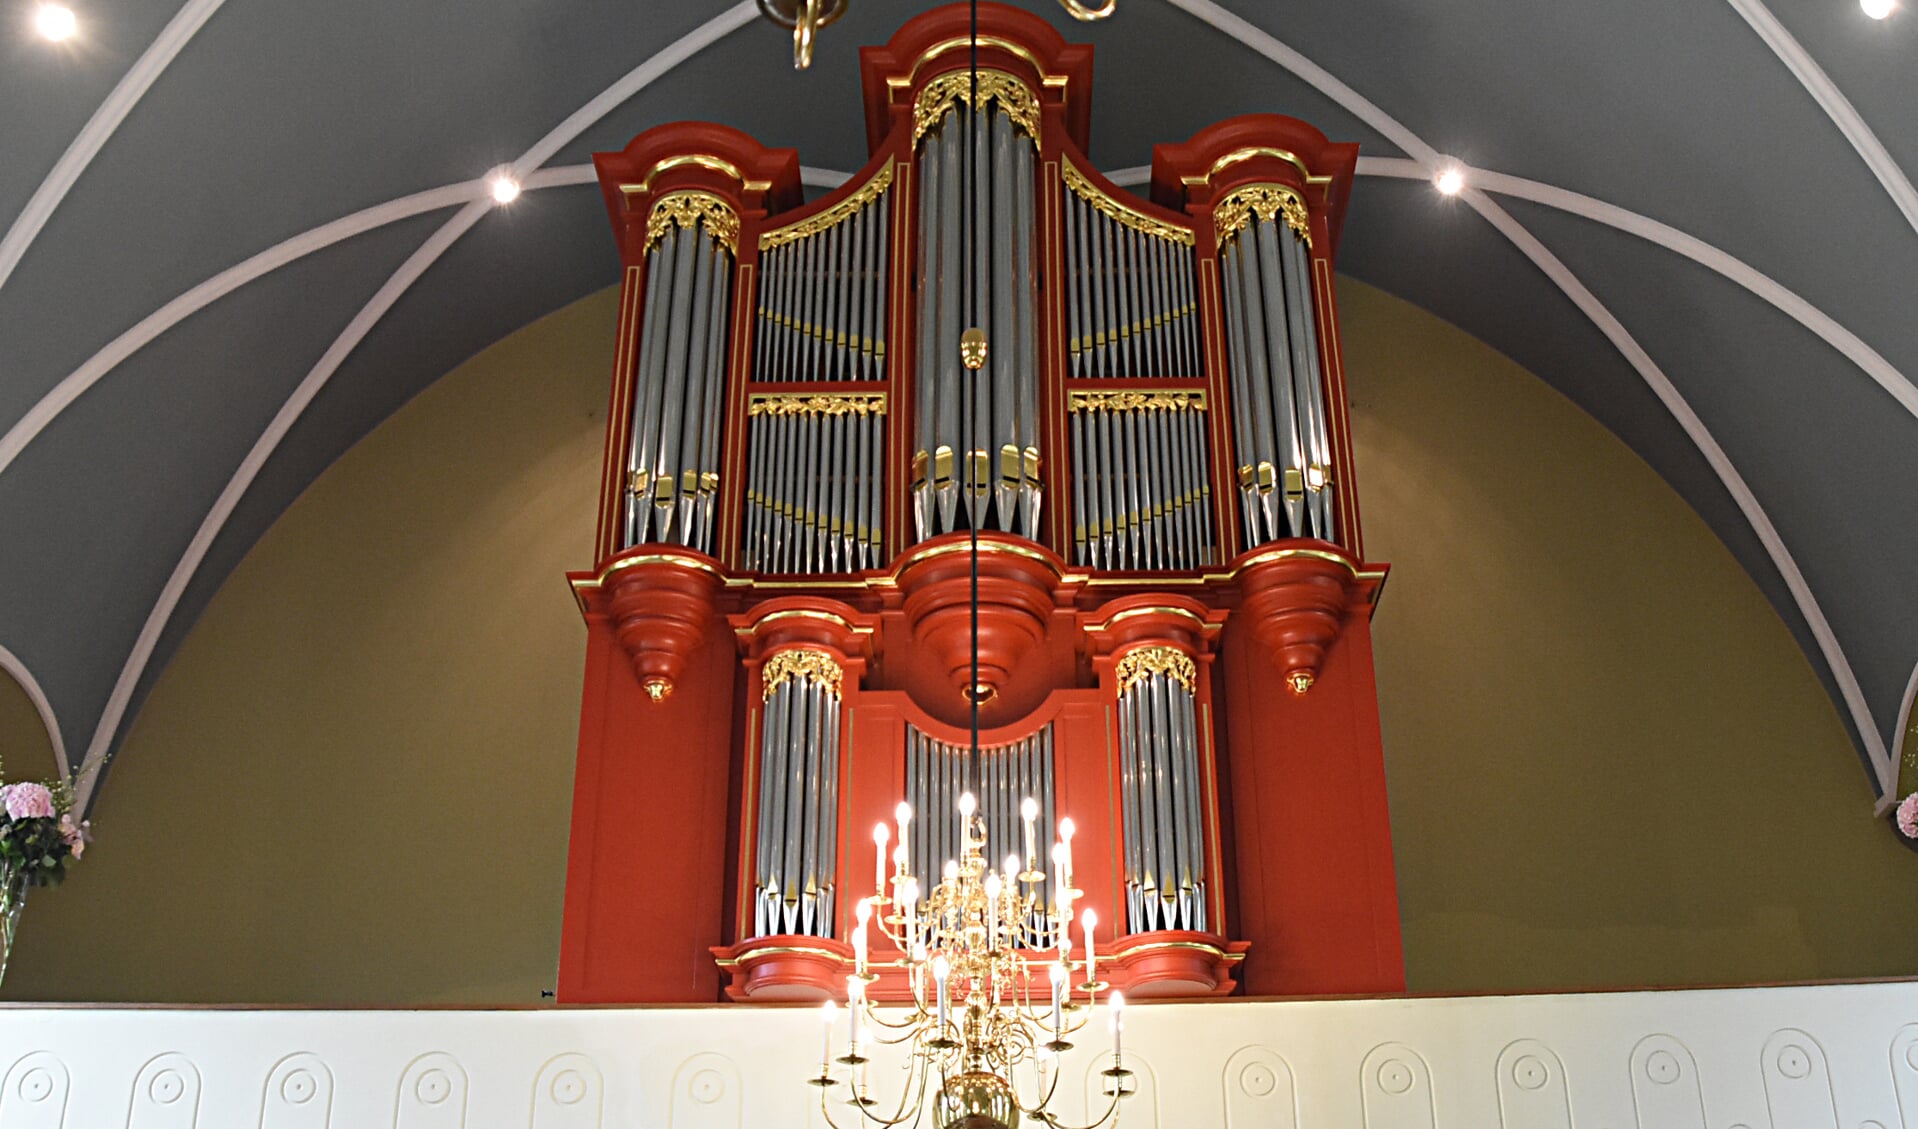 Het nieuwe orgel is gebouwd door A. Nijsse uit Oud Sabbinge. 